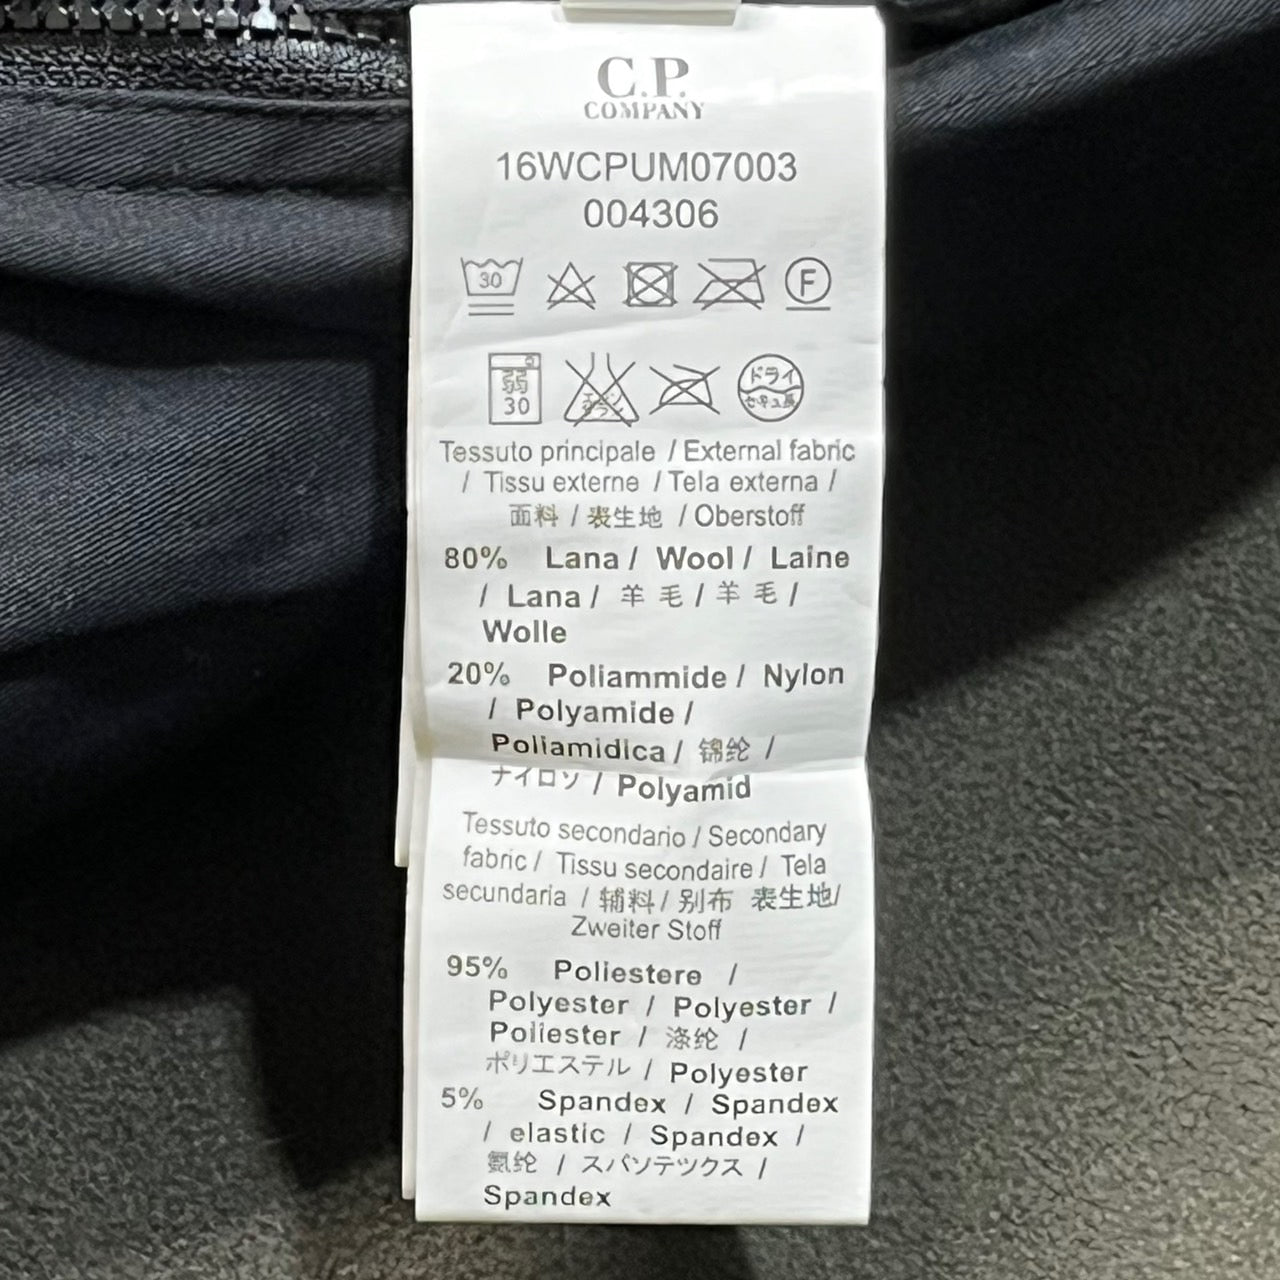 C.P.COMPANY(シーピーカンパニー) 00's Knit switching goggle jacket / ニット 切替 ゴーグル ジャケット パーカー 16WCPUM07003 44(S程度) ブラウン Y2K 止水ジップ テック